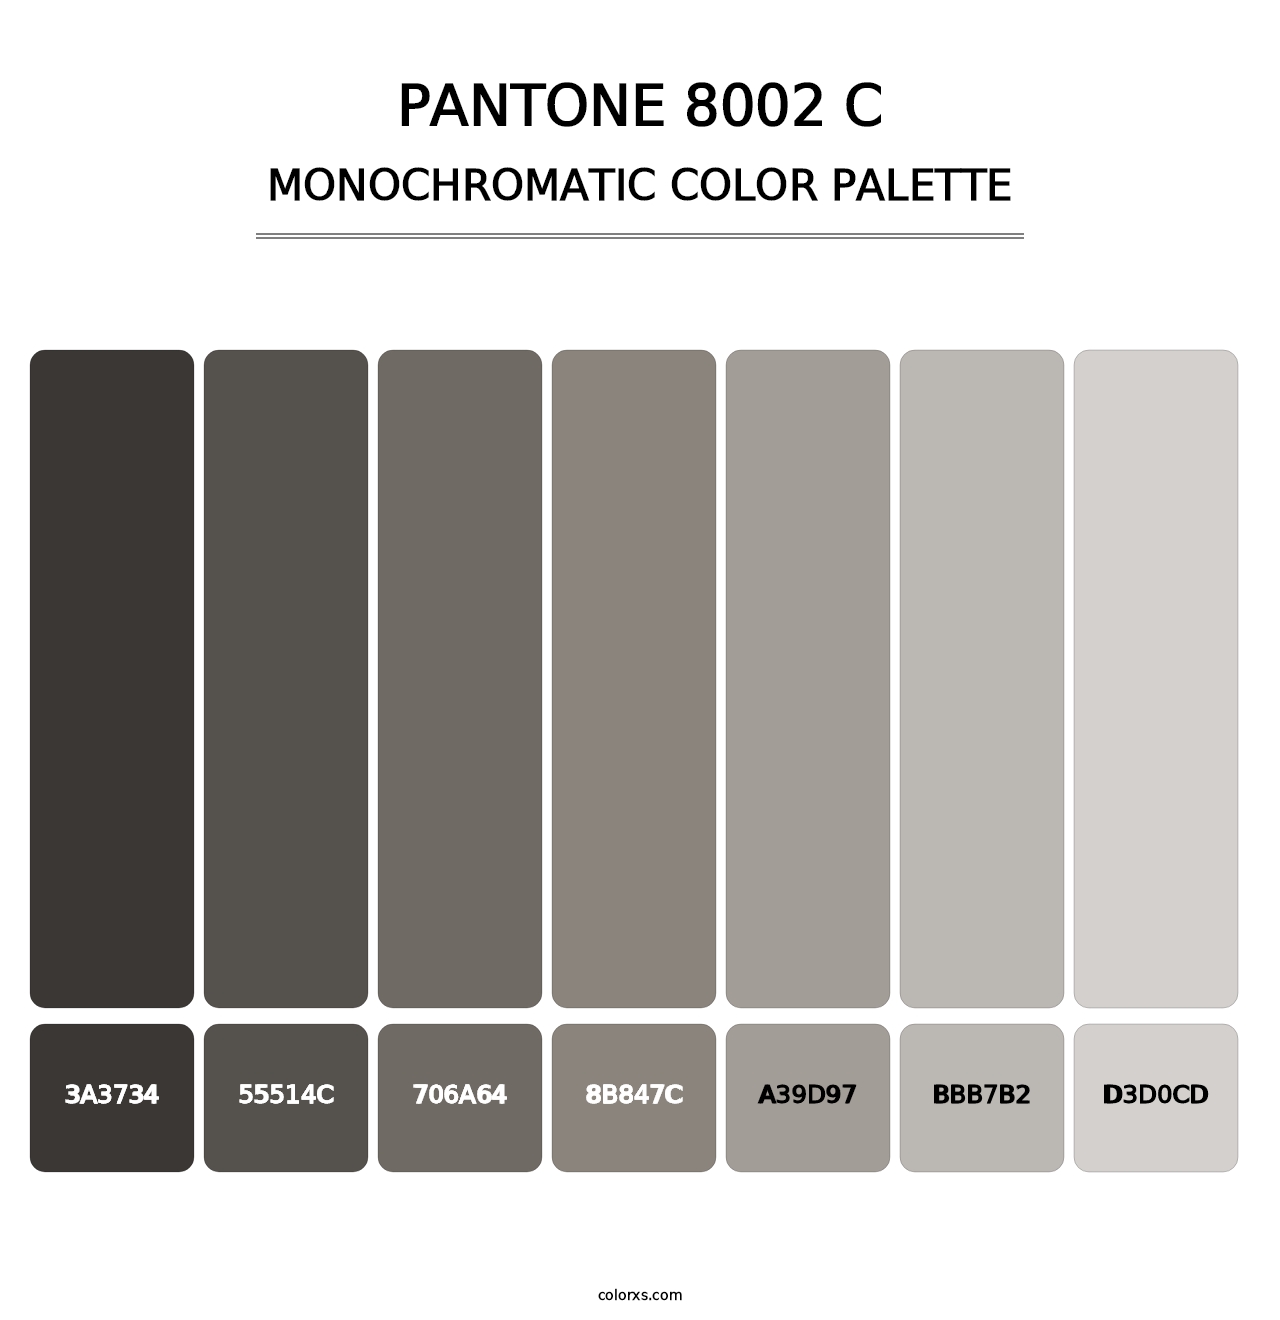 PANTONE 8002 C - Monochromatic Color Palette